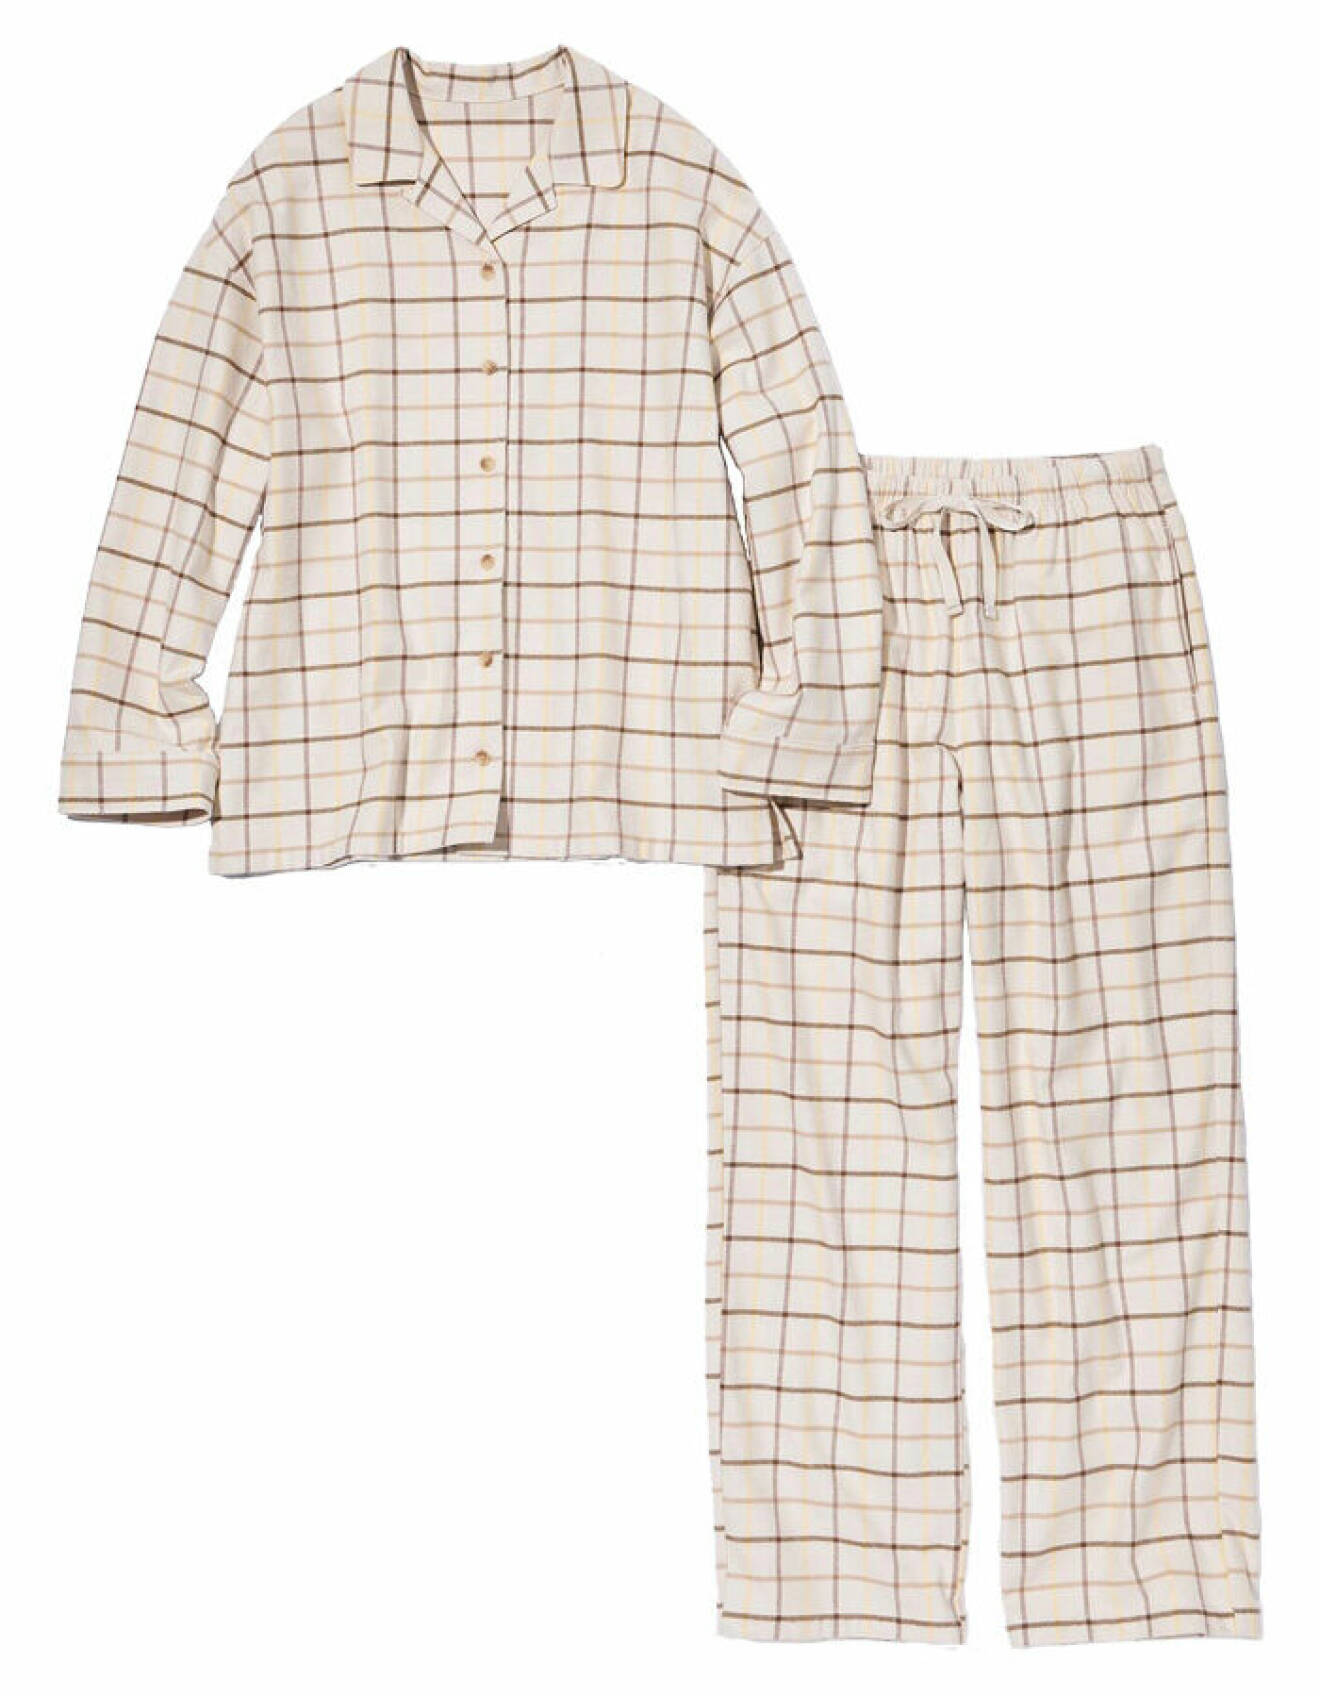 rutigt pyjamasset i brun och beige nyans tillverkat i bomullsflanell från Uniqlo